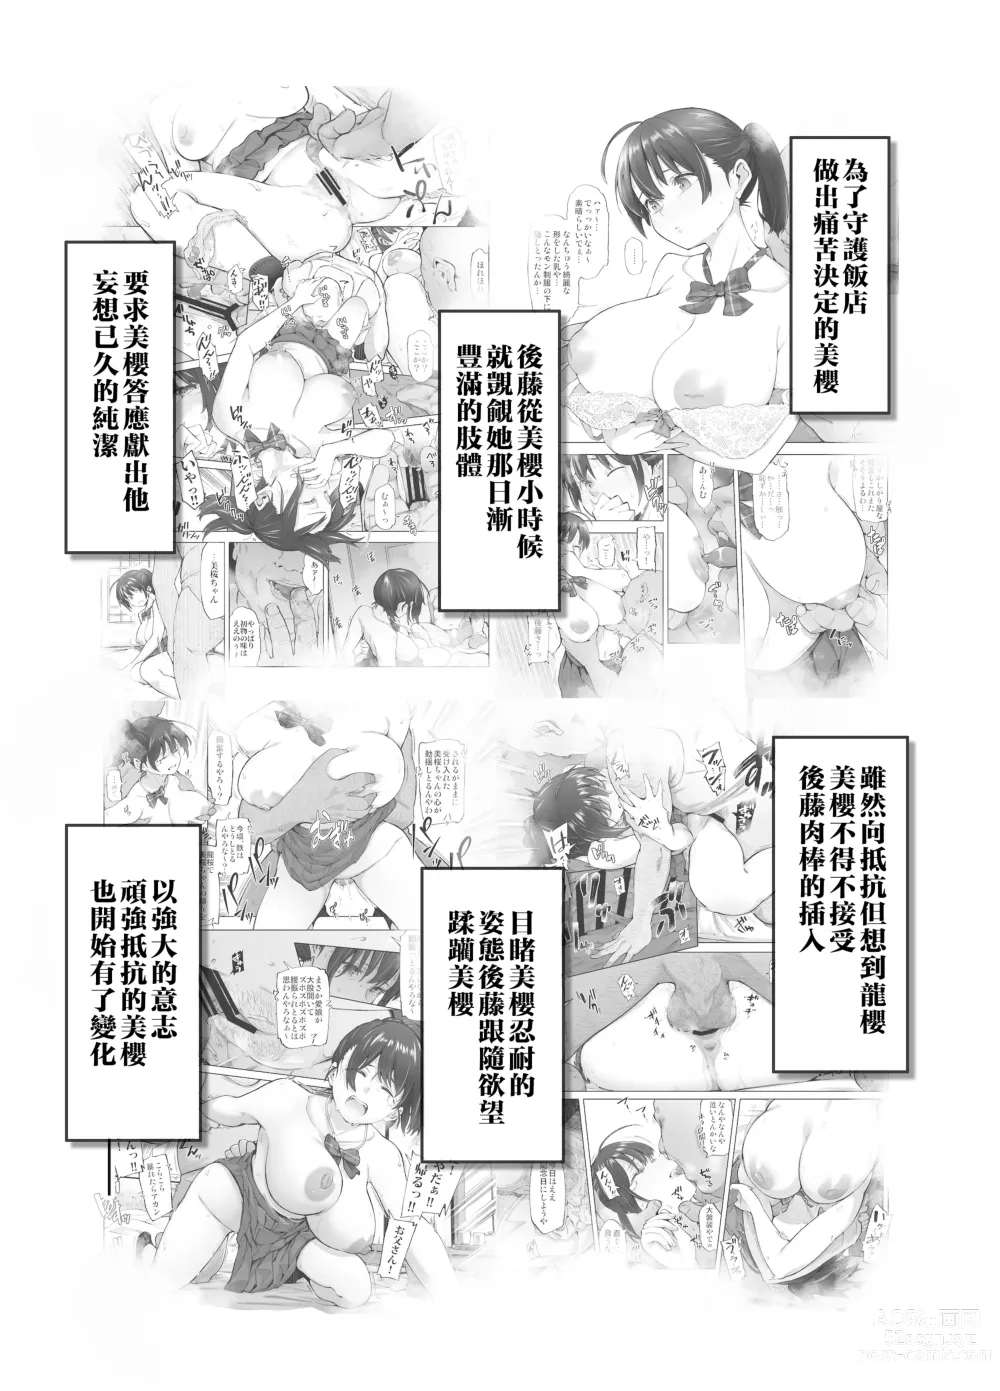 Page 3 of doujinshi Sakura Saku Chiru Hanabira Tsubomi Hokorobibu ~Ossan no Nikutsubo e to Ochi Hateta Saiai no Osananajimi Yoshioka Mio~